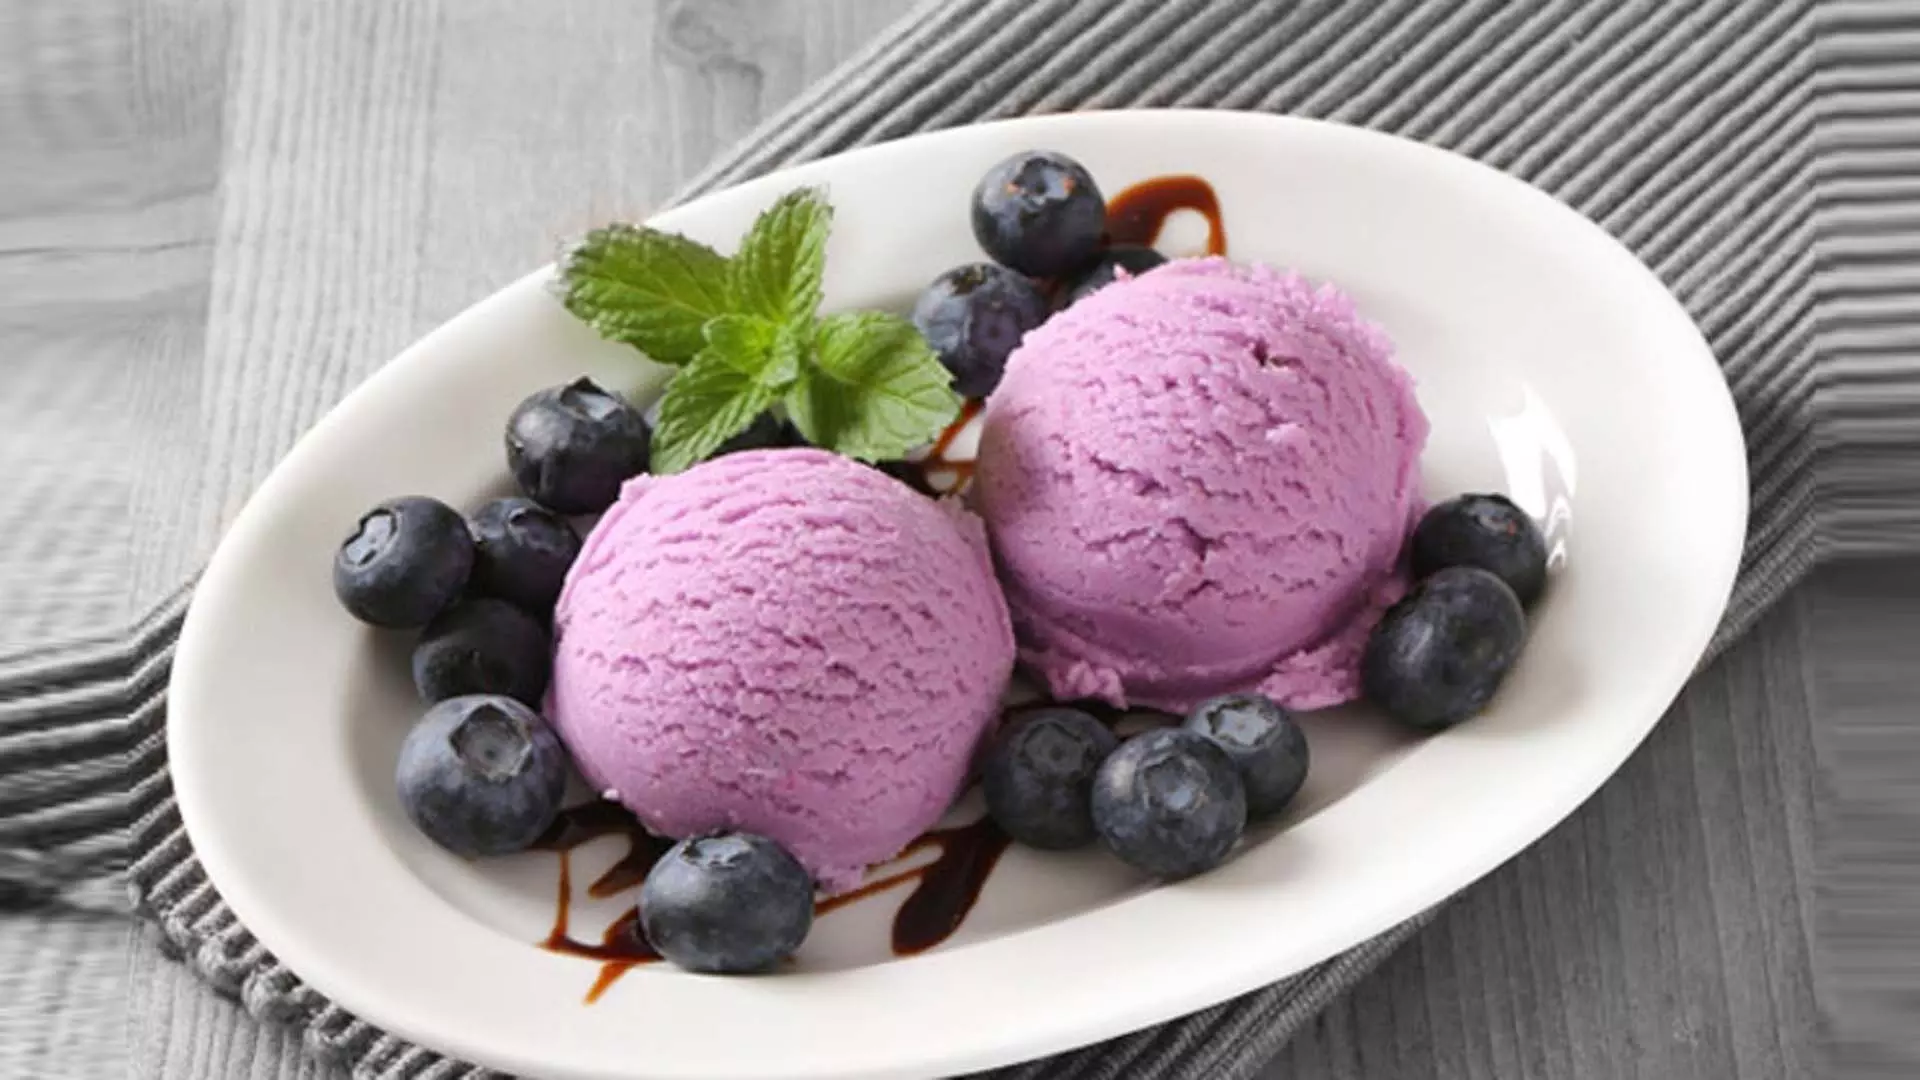 गर्मियों के लिए पसंदीदा जामुन आइसक्रीम बनाएं